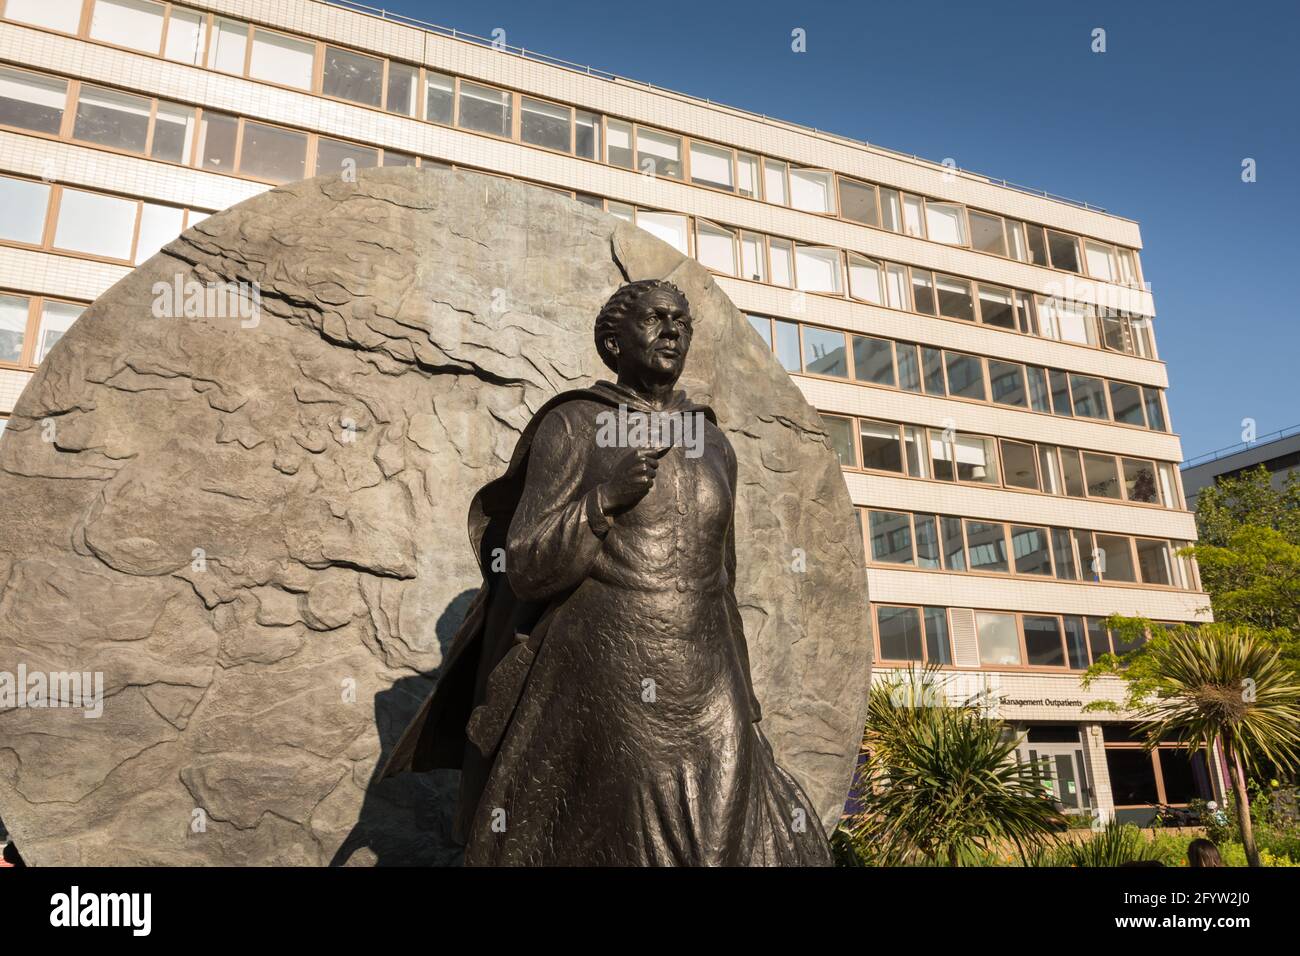 Une statue en bronze à l'héroïne de la guerre de Crimée Mary Seacole, par Martin Jennings, devant l'hôpital St Thomas dans le centre de Londres, Angleterre, Royaume-Uni Banque D'Images